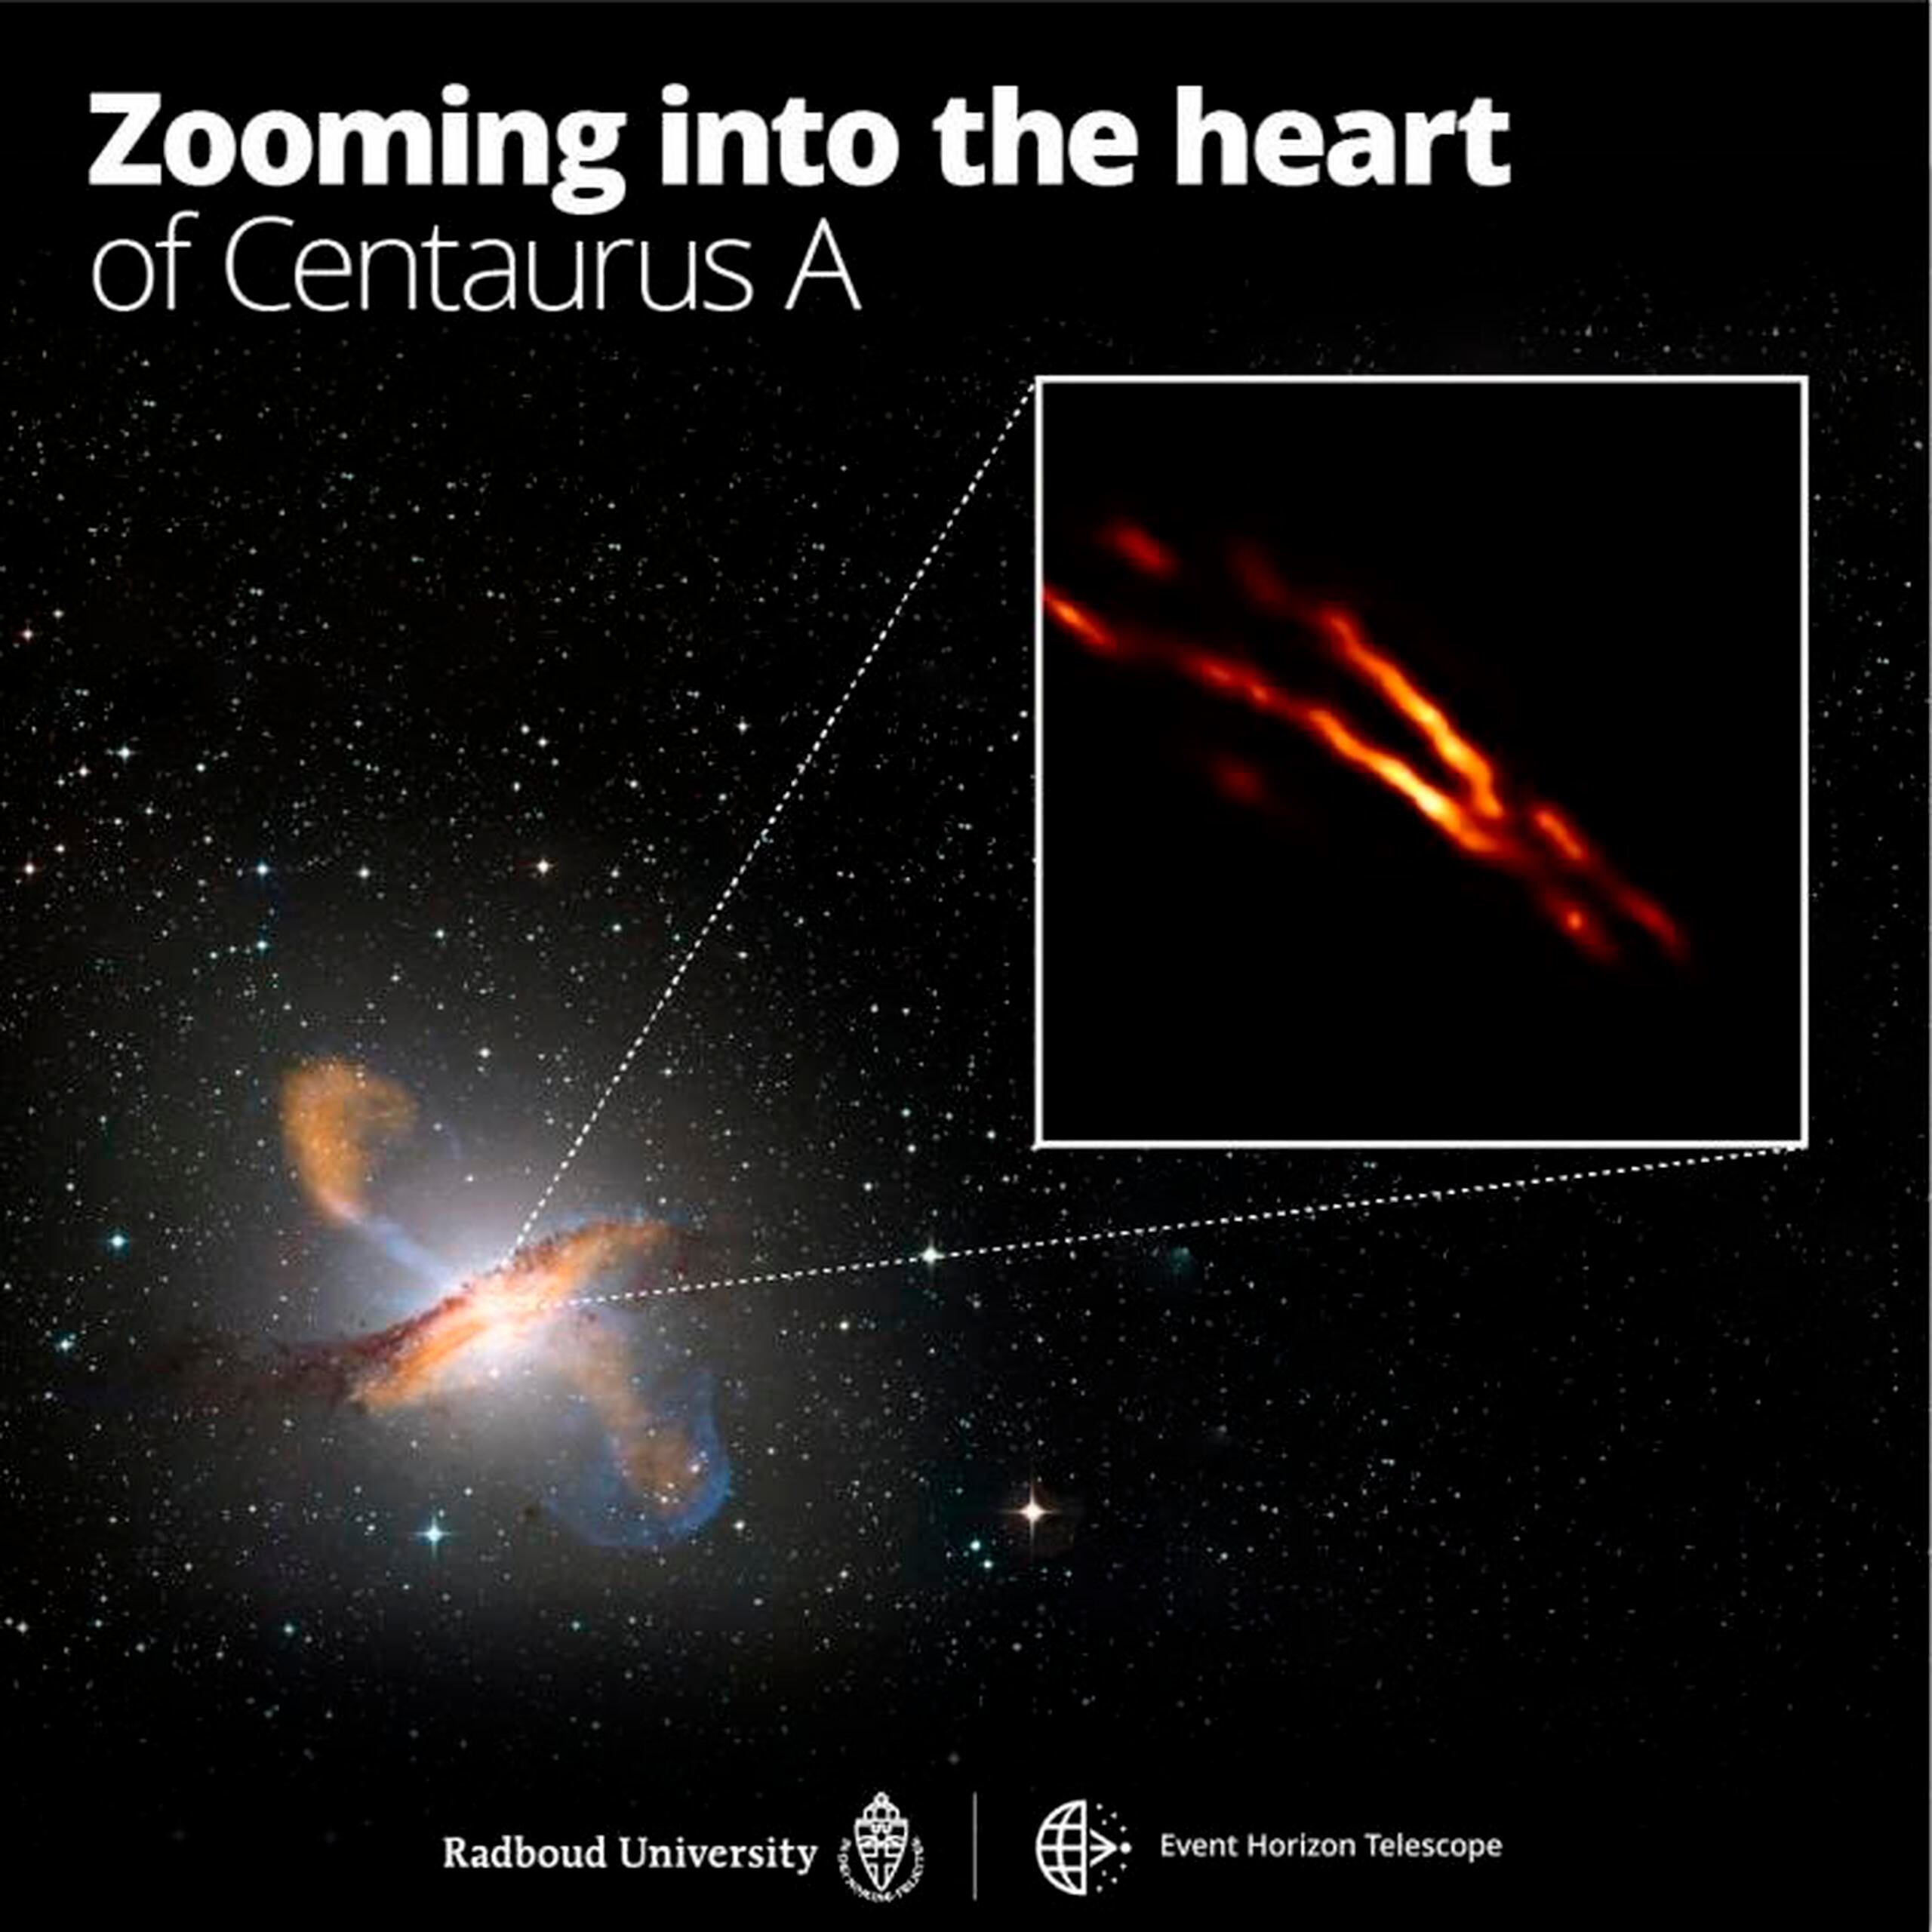 Imagen de máxima resolución de Centaurus A obtenida con el Telescopio Event Horizon sobre una imagen compuesta en color de toda la galaxia. EFE/Radboud University; ESO/WFI; MPIfR/ESO/APEX/A. Weiss et al.; NASA/CXC/CfA/R. Kraft et al.; EHT/M. Janssen et al.
